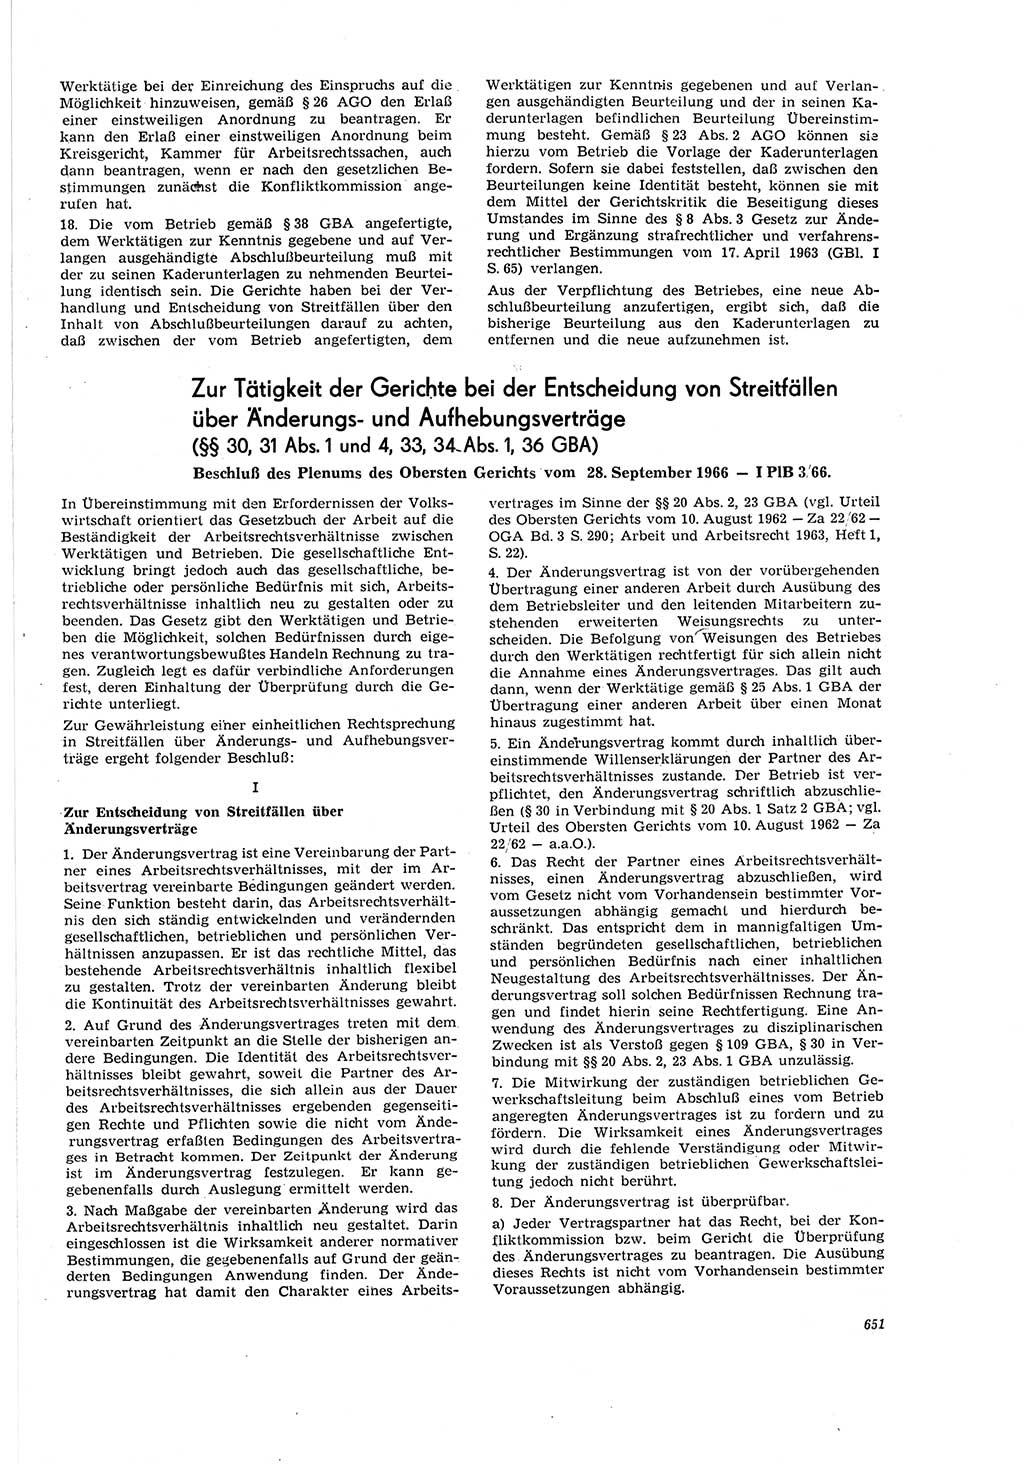 Neue Justiz (NJ), Zeitschrift für Recht und Rechtswissenschaft [Deutsche Demokratische Republik (DDR)], 20. Jahrgang 1966, Seite 651 (NJ DDR 1966, S. 651)